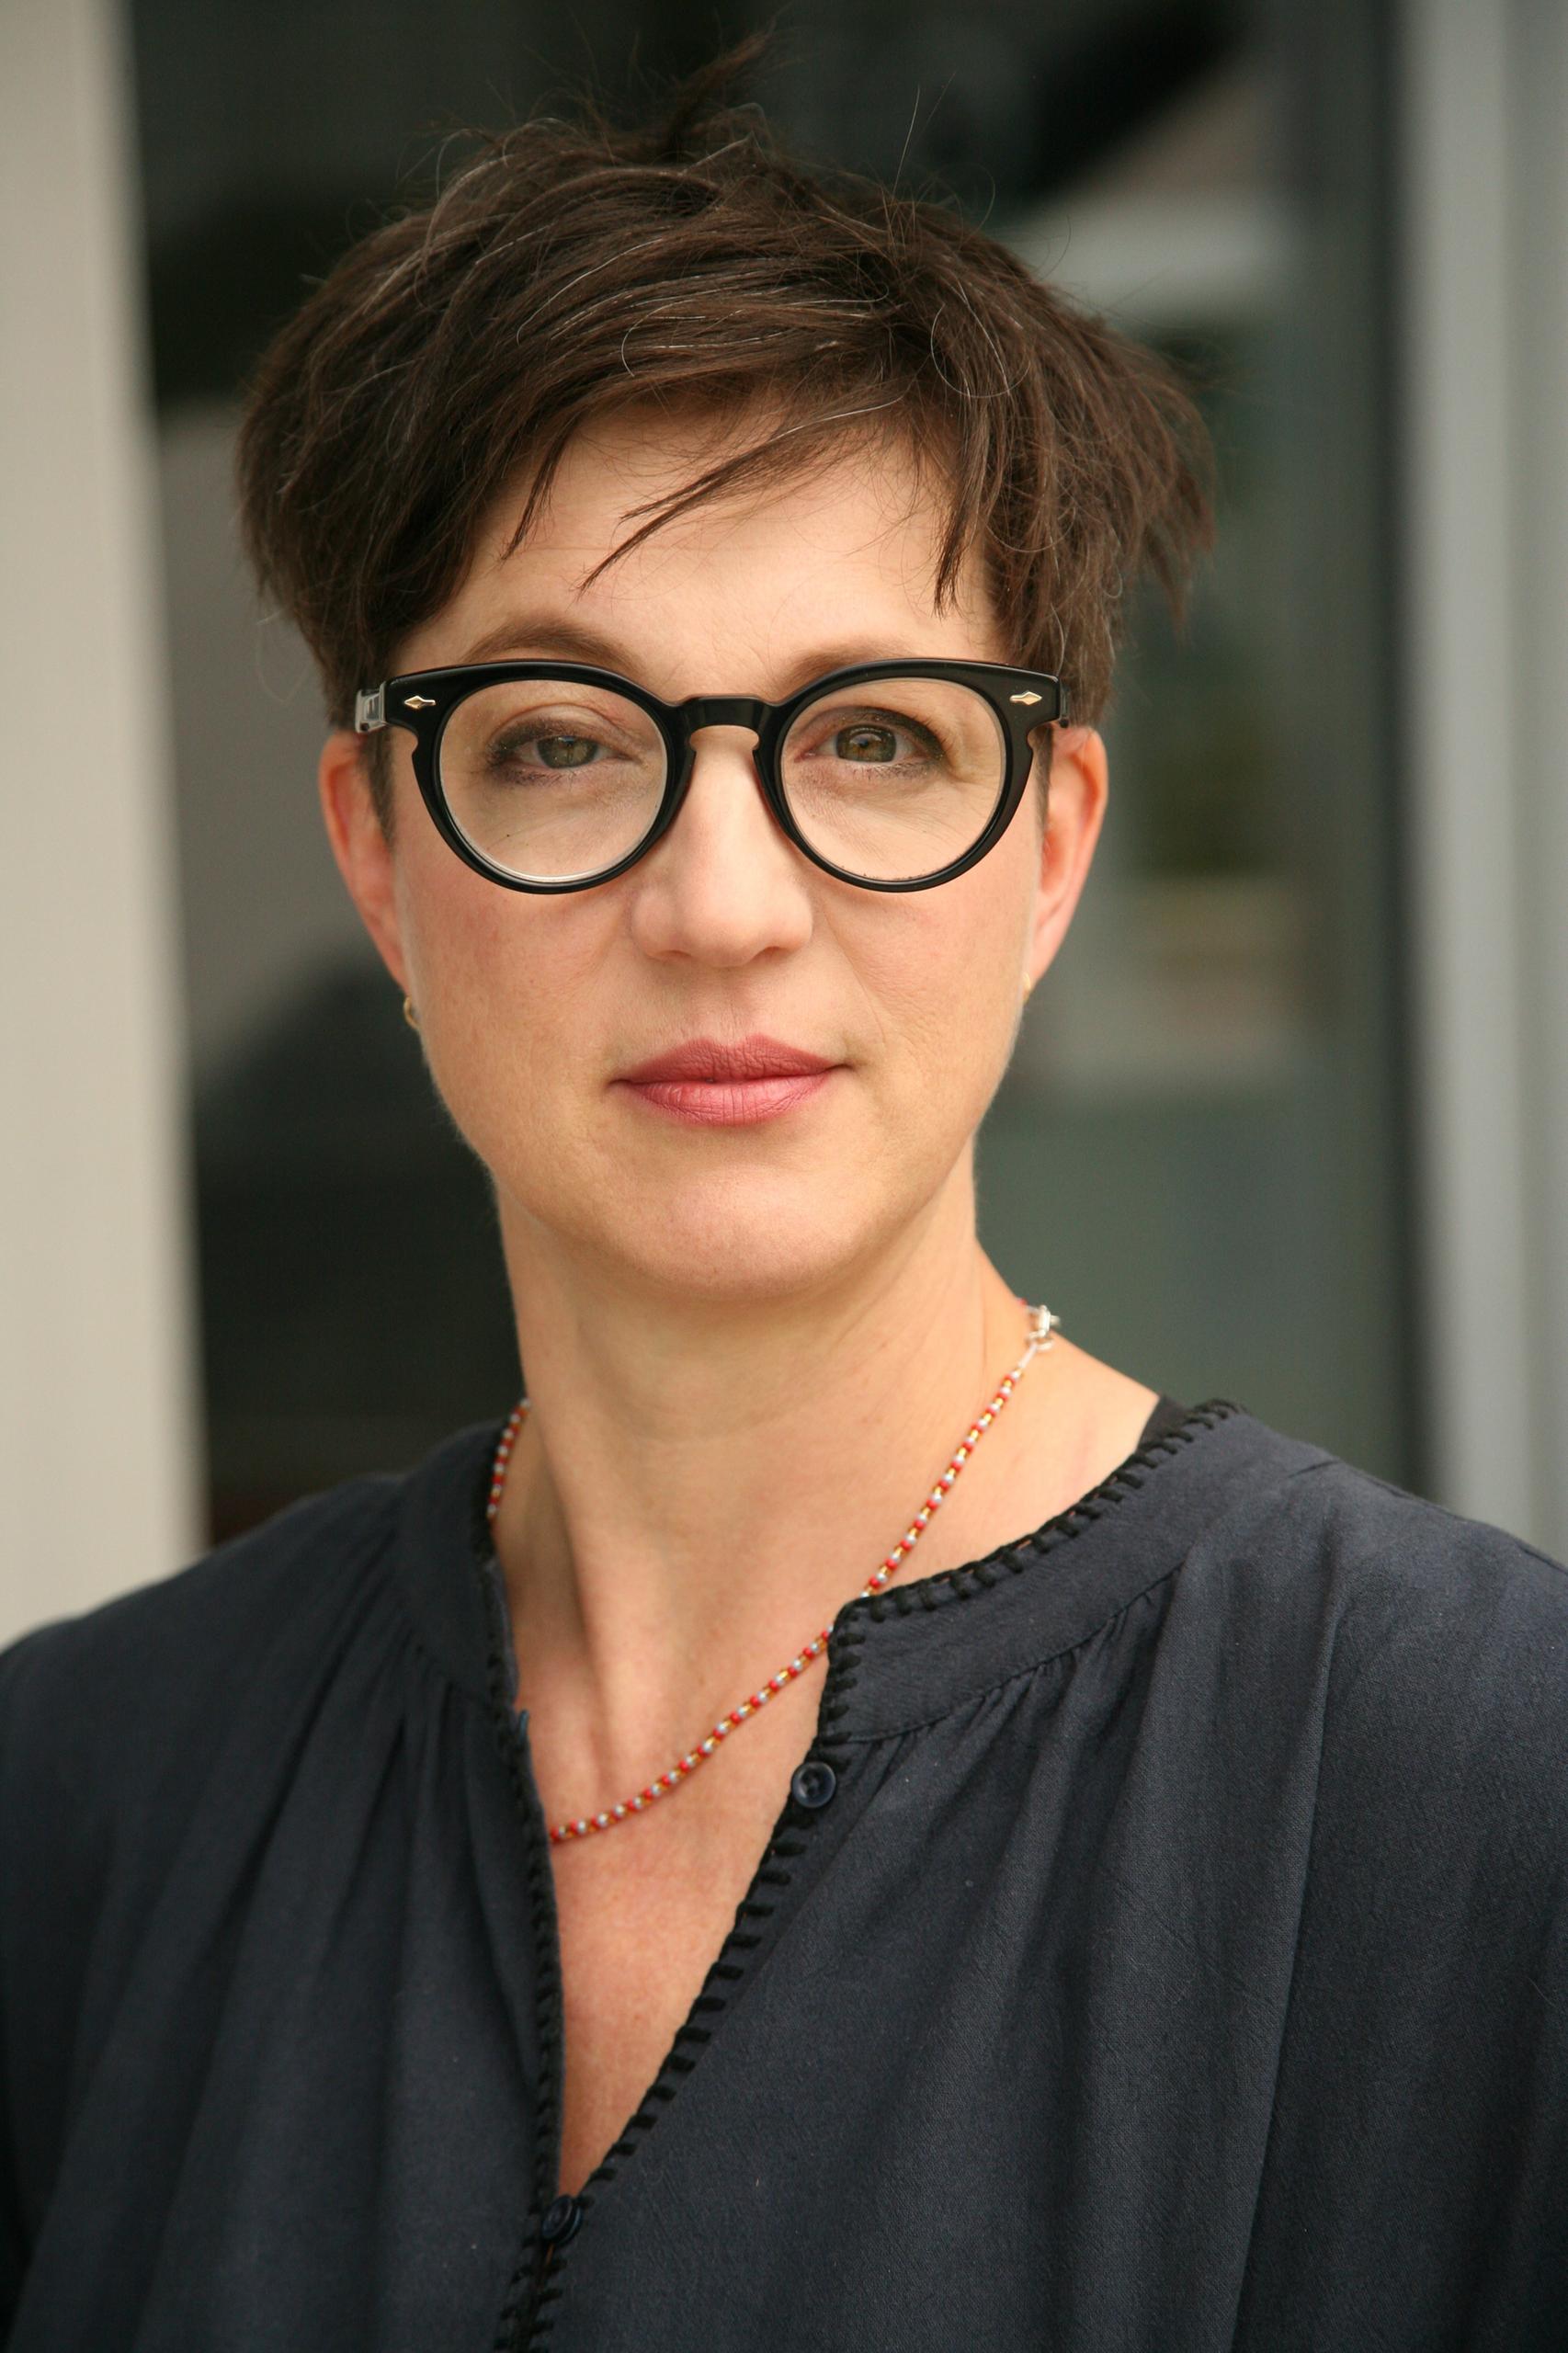 弗蘭西斯·阿德勒 (Françoise Adler) 是琉森應用科學與藝術大學在紡織品設計和永續性課題方面的研究人員。